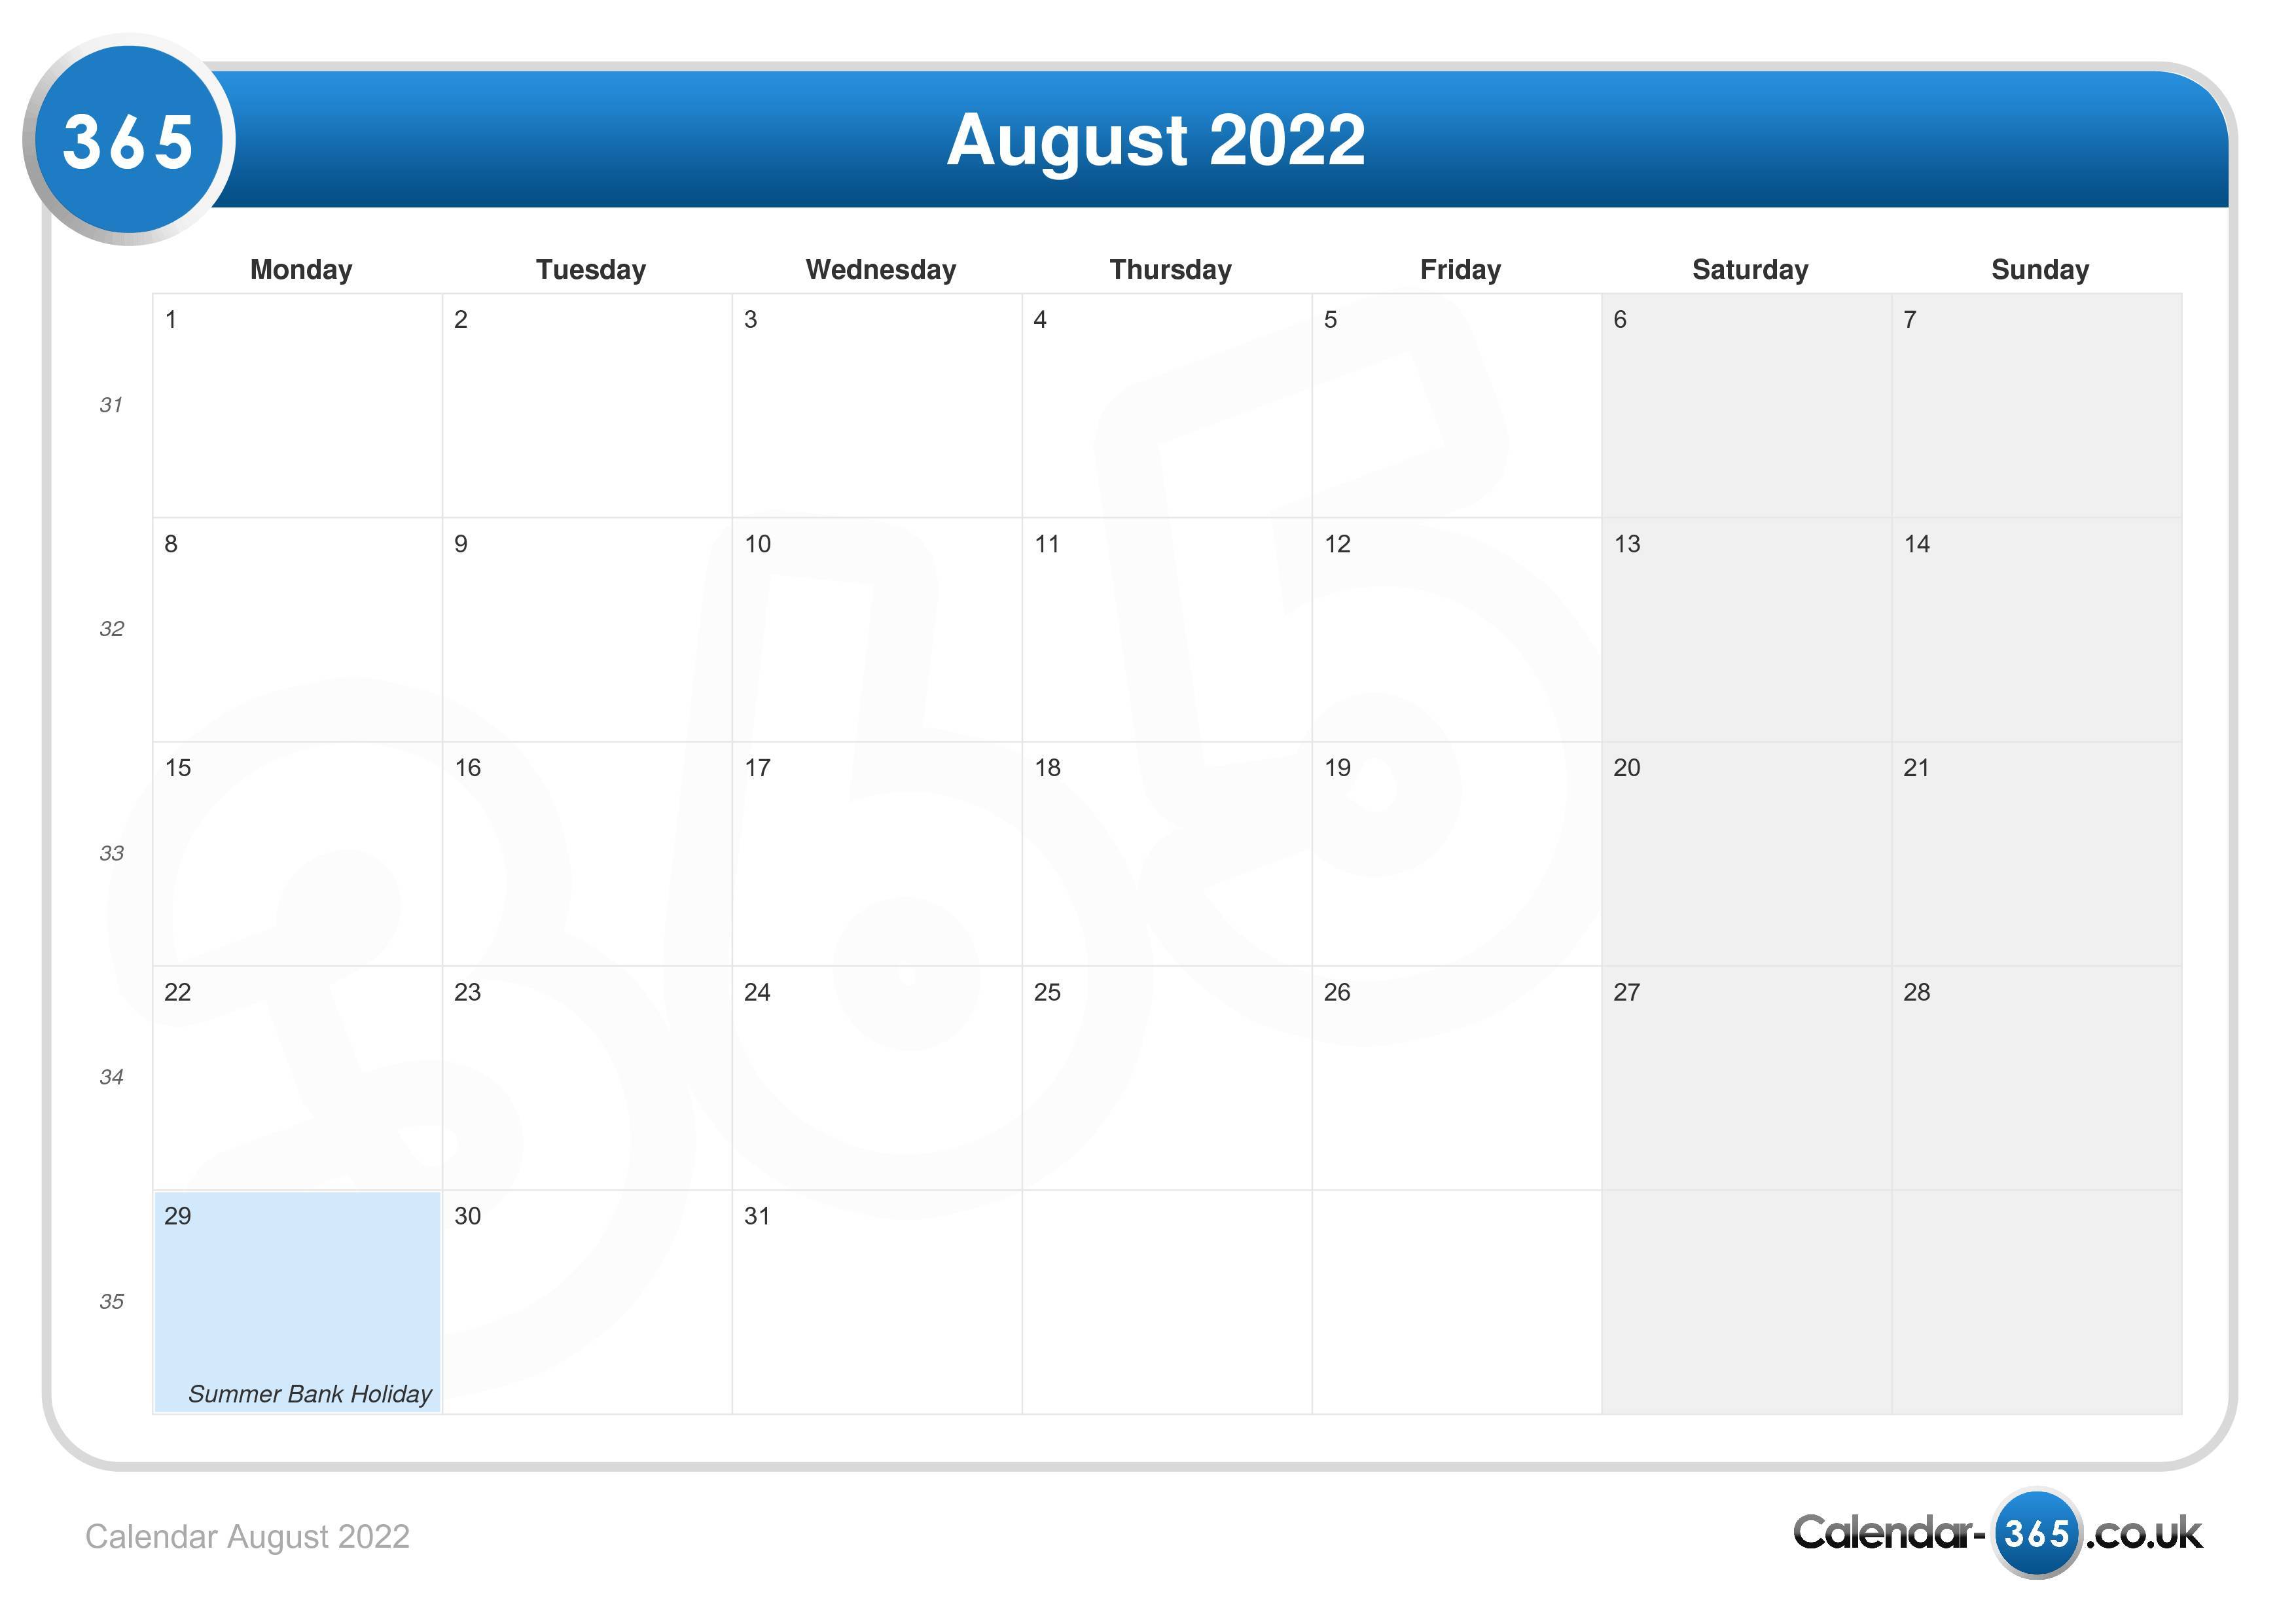 National Calendar August 2022 Calendar August 2022